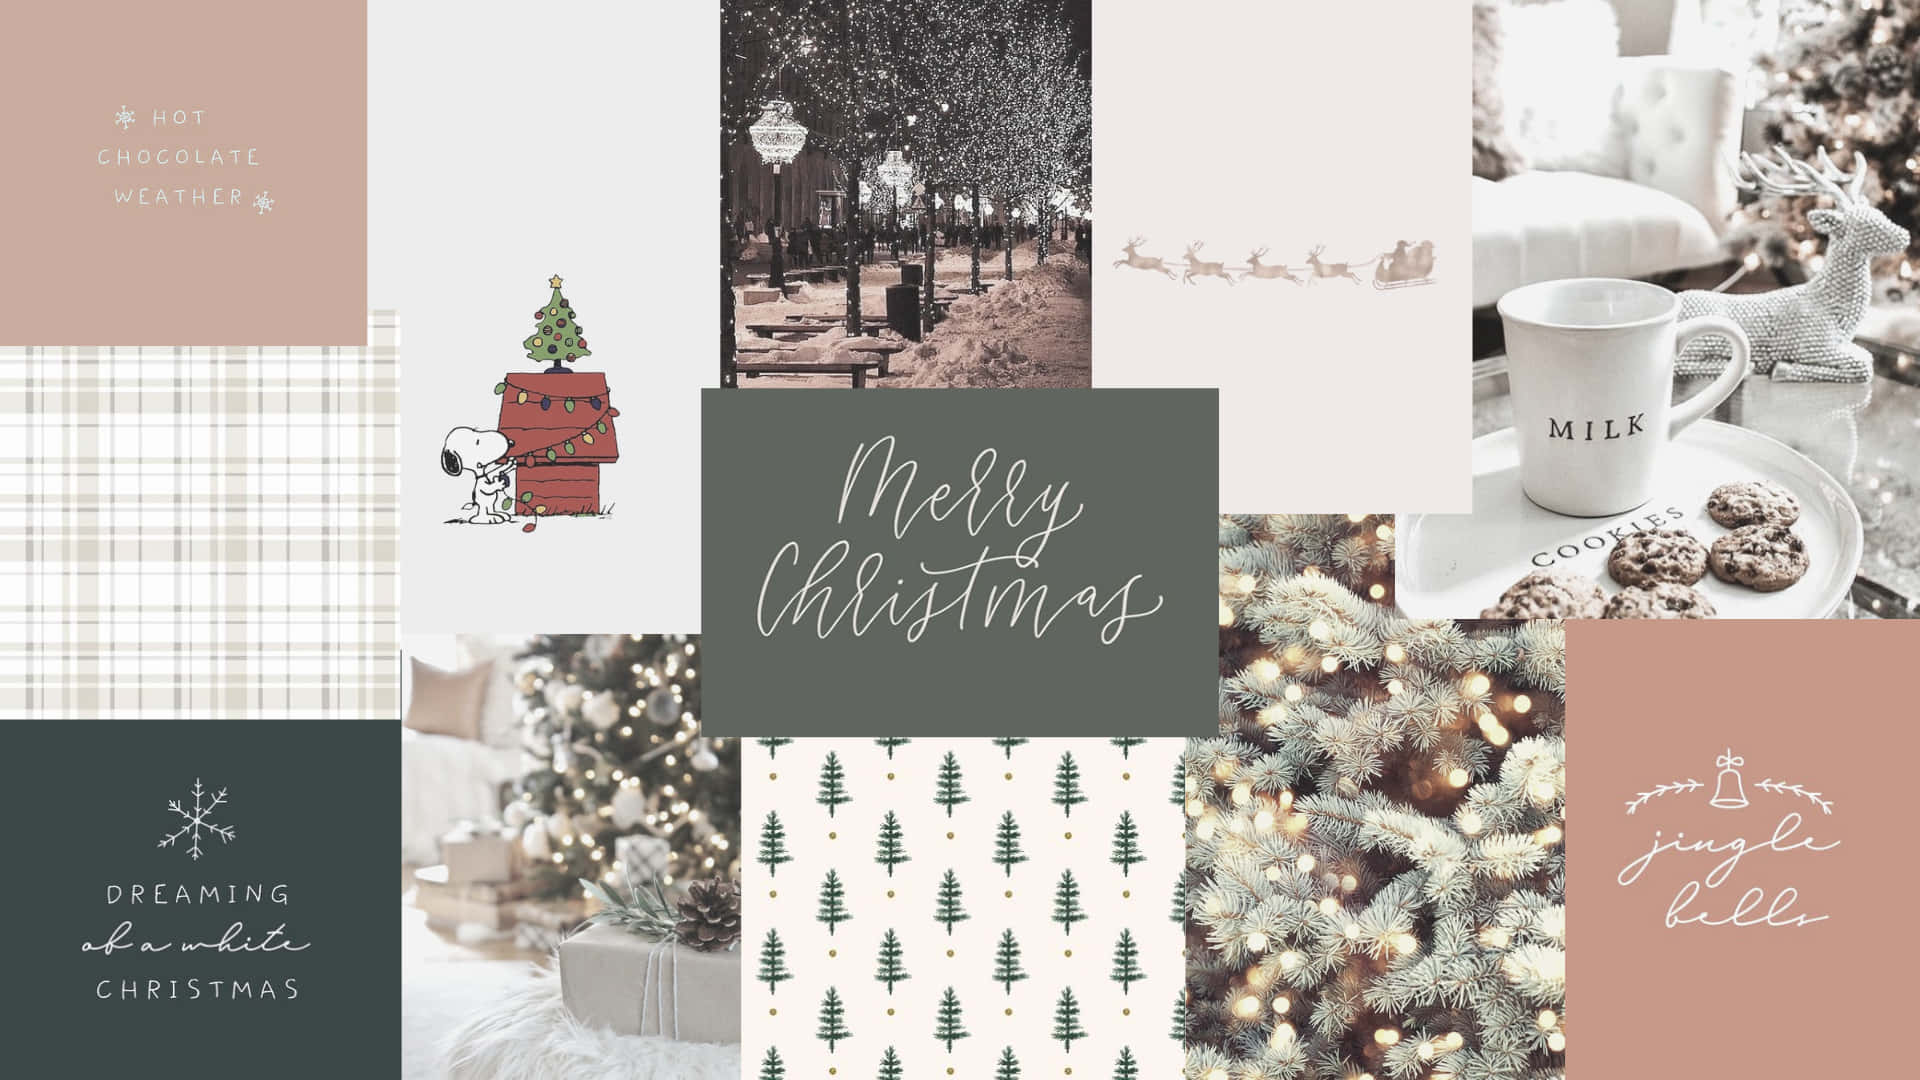 Få i stemningen af ferien med denne søde jule bærbar! Wallpaper